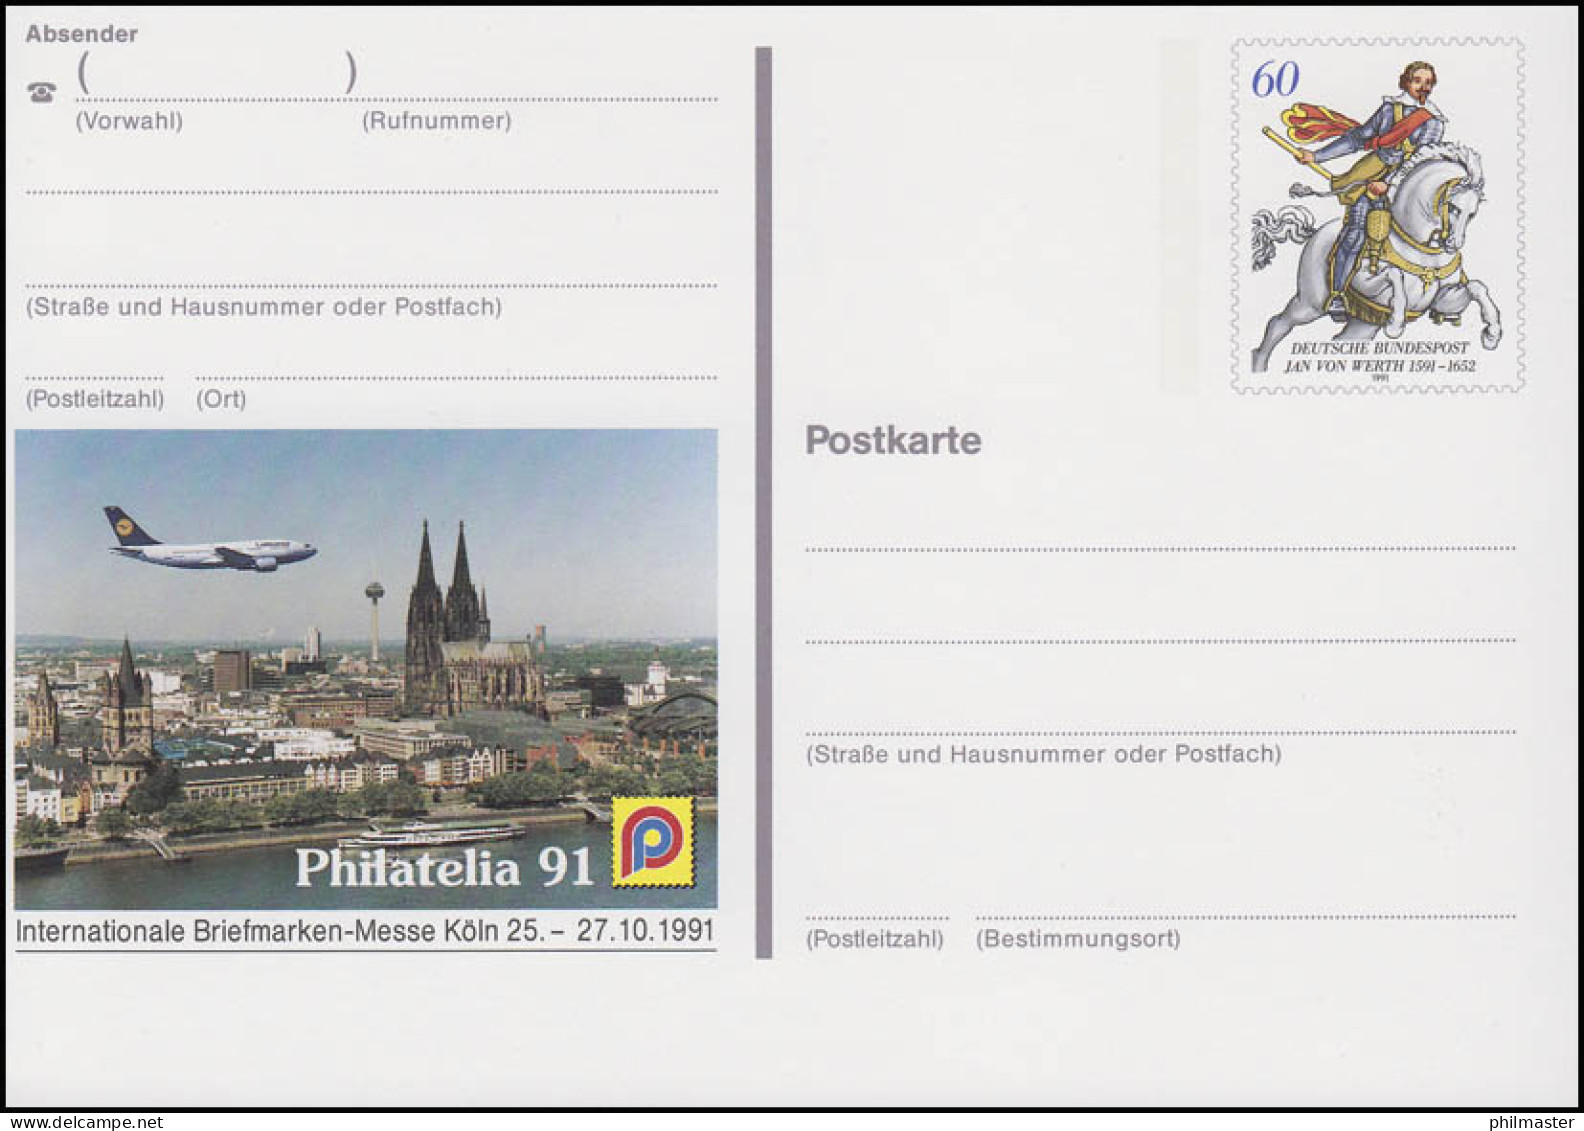 PSo 25 Briefmarken-Messe PHILATELIA Köln 1991, ** - Cartes Postales - Neuves